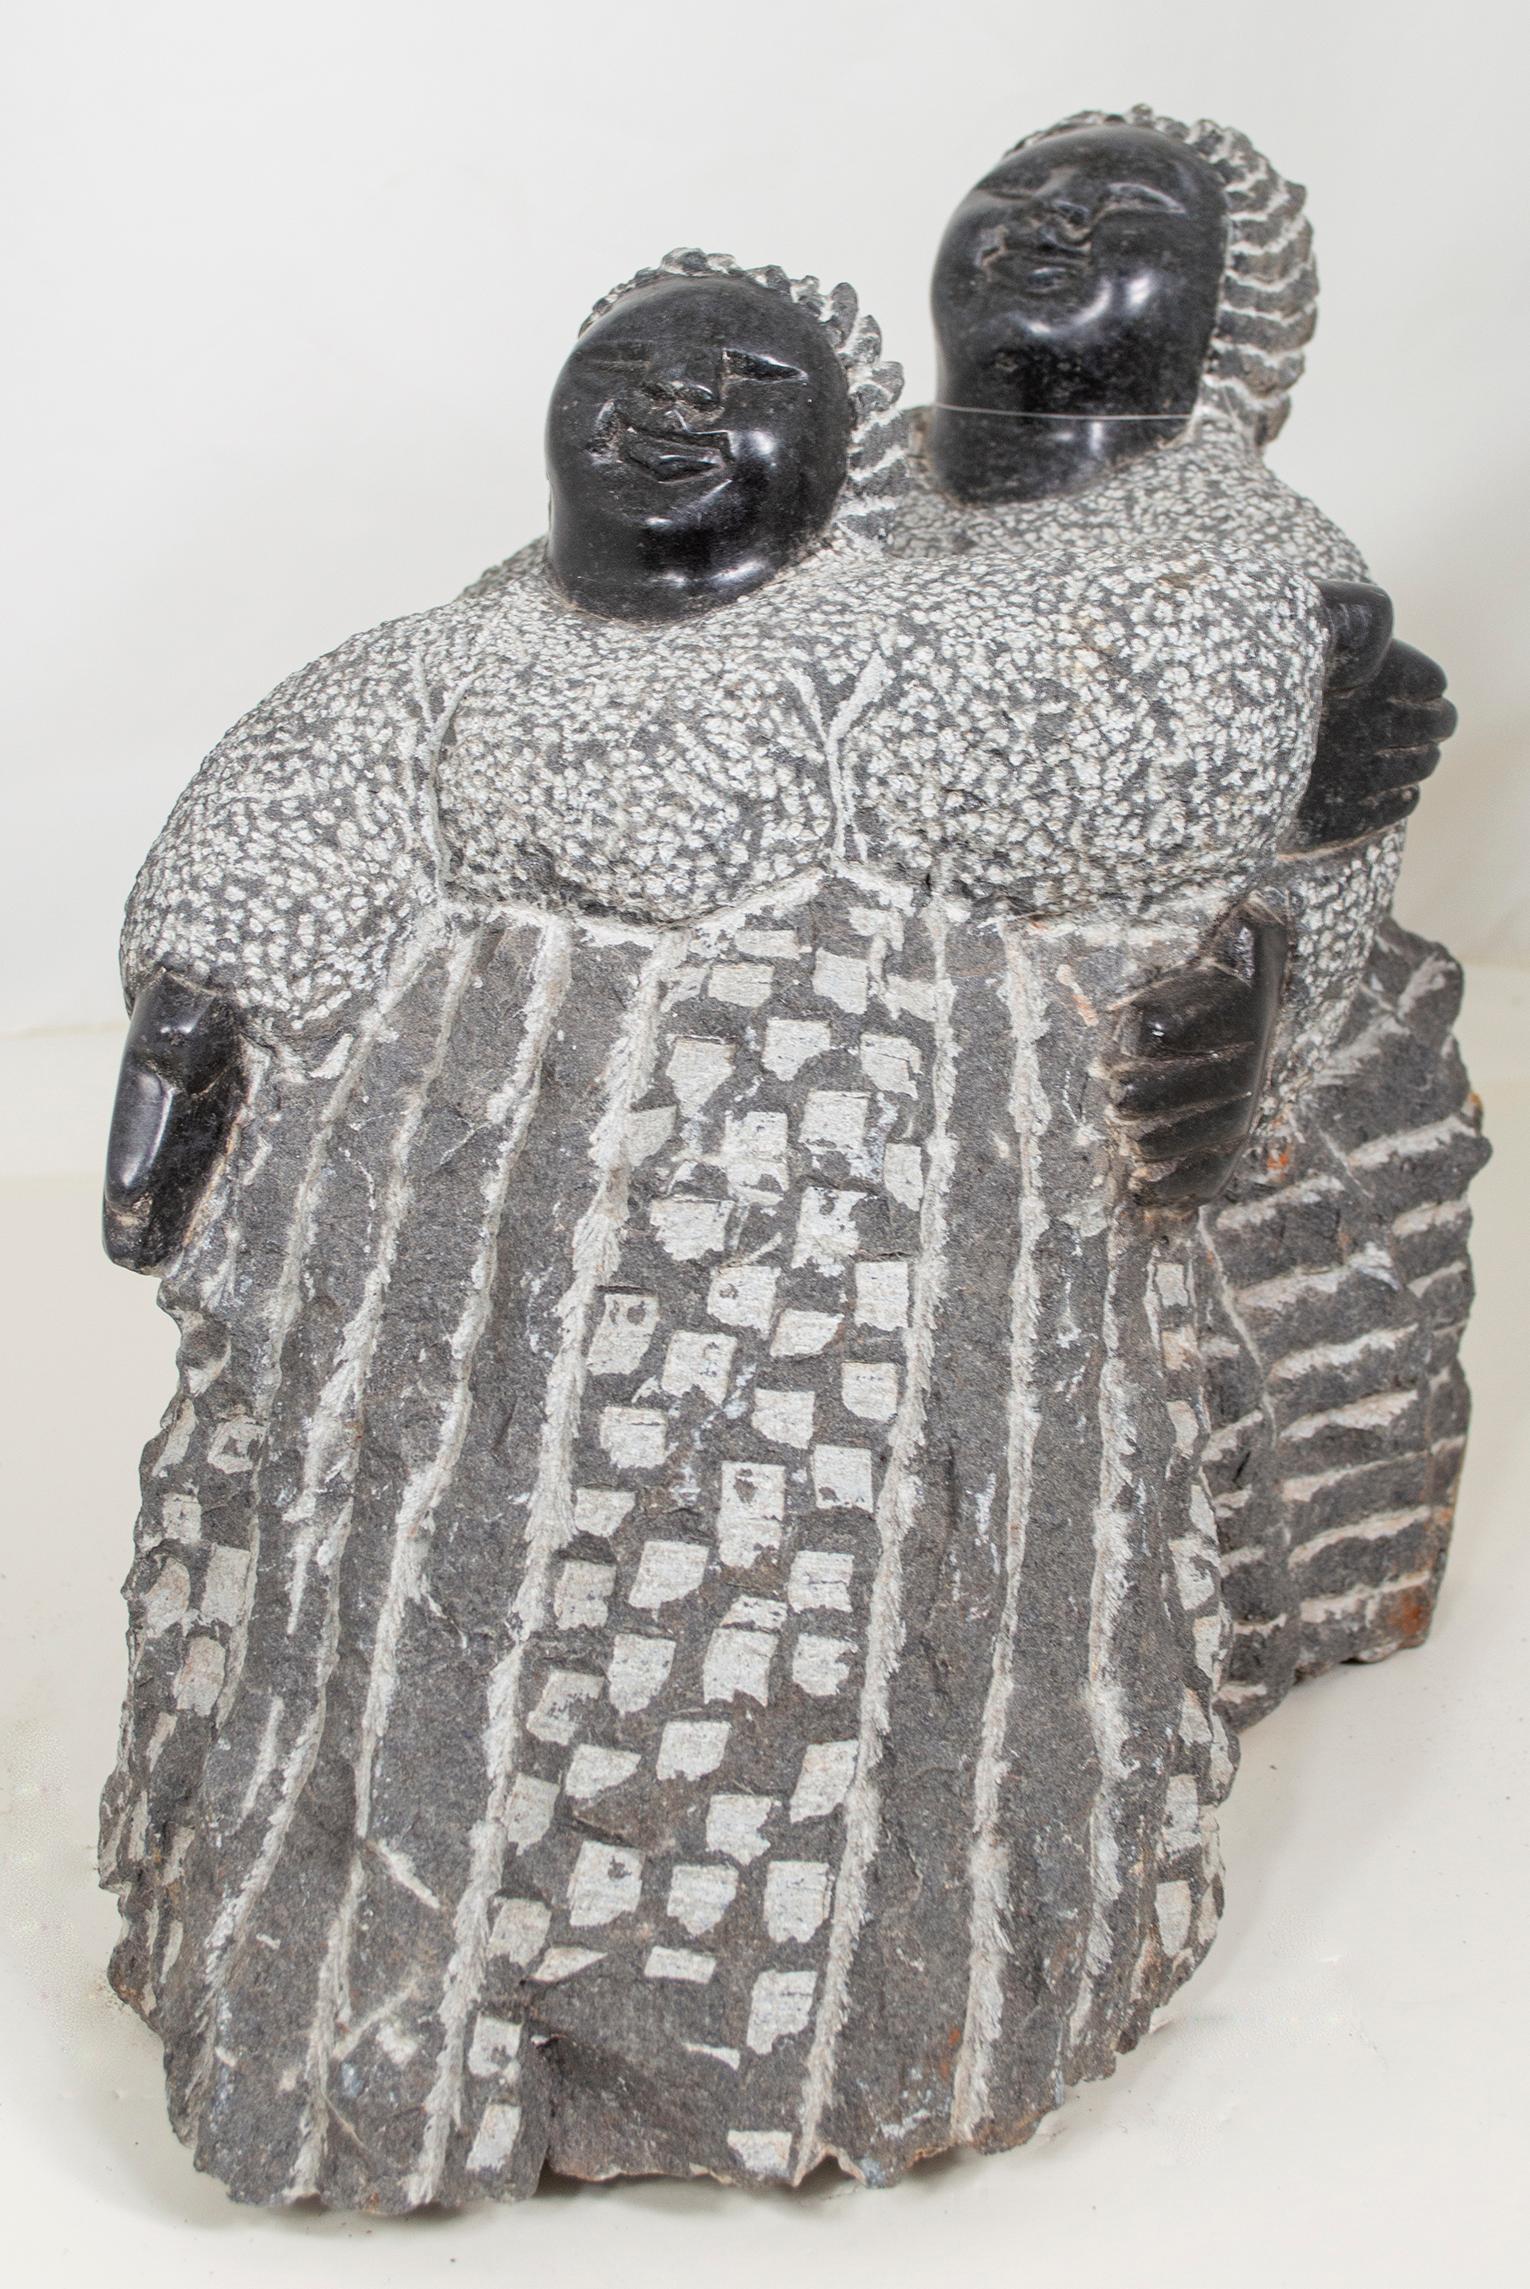 Playing Sisters" est une sculpture originale en serpentine noire réalisée par Colleen Madamombe, célèbre artiste shona de la deuxième génération. La sculpture présente un personnage commun à l'œuvre de Madamombe, à savoir une femme au visage rond,